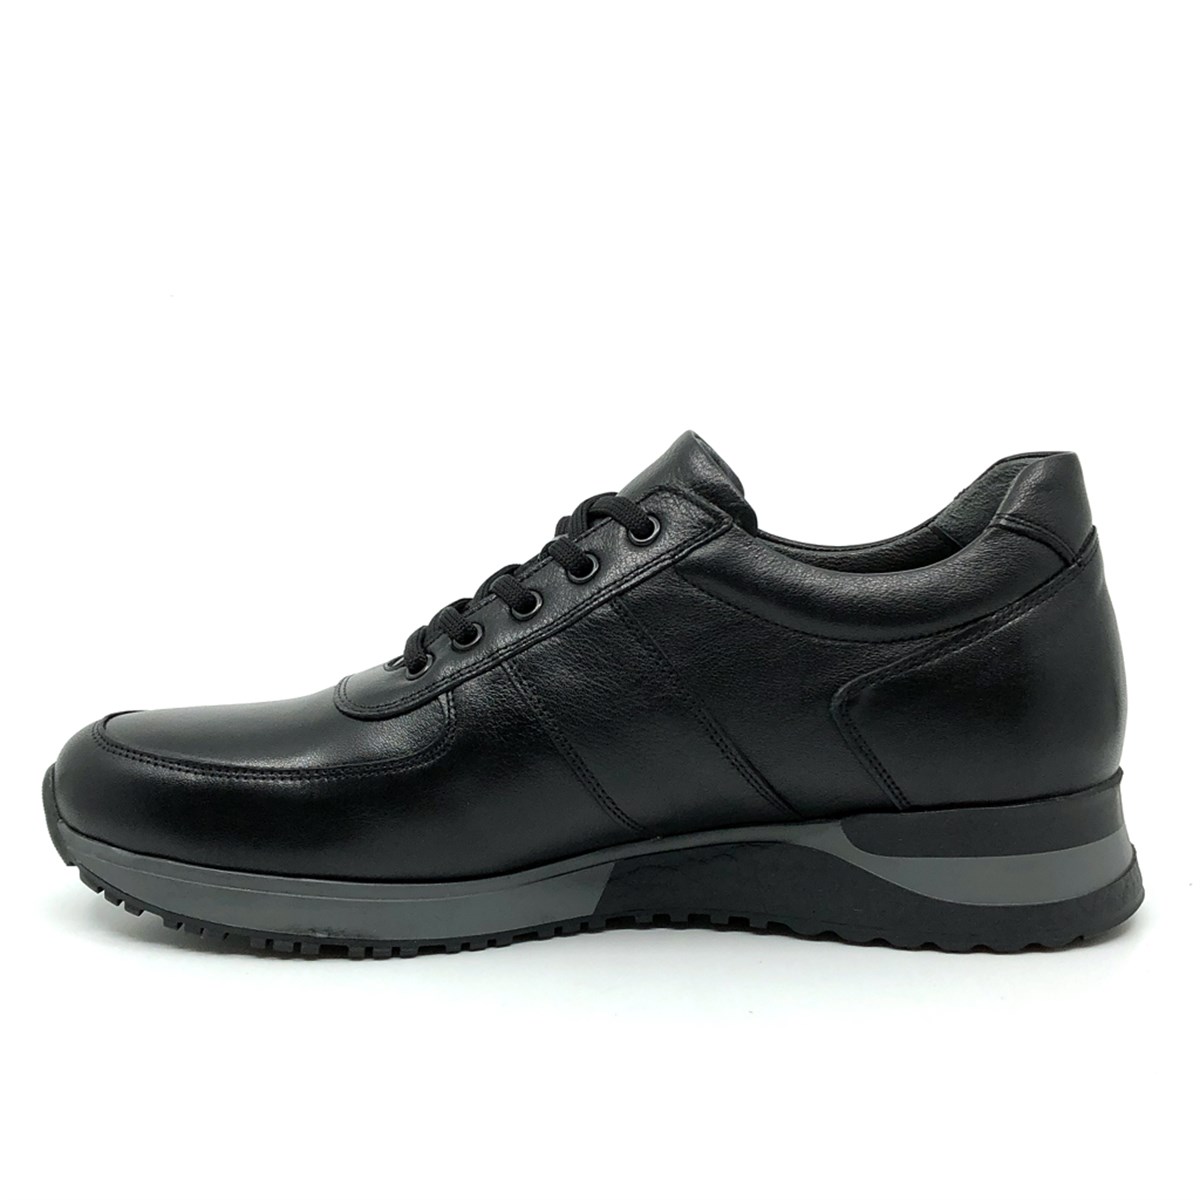 Fosco Hakiki Deri Siyah Erkek Sneaker Ayakkabı 2101-1 306